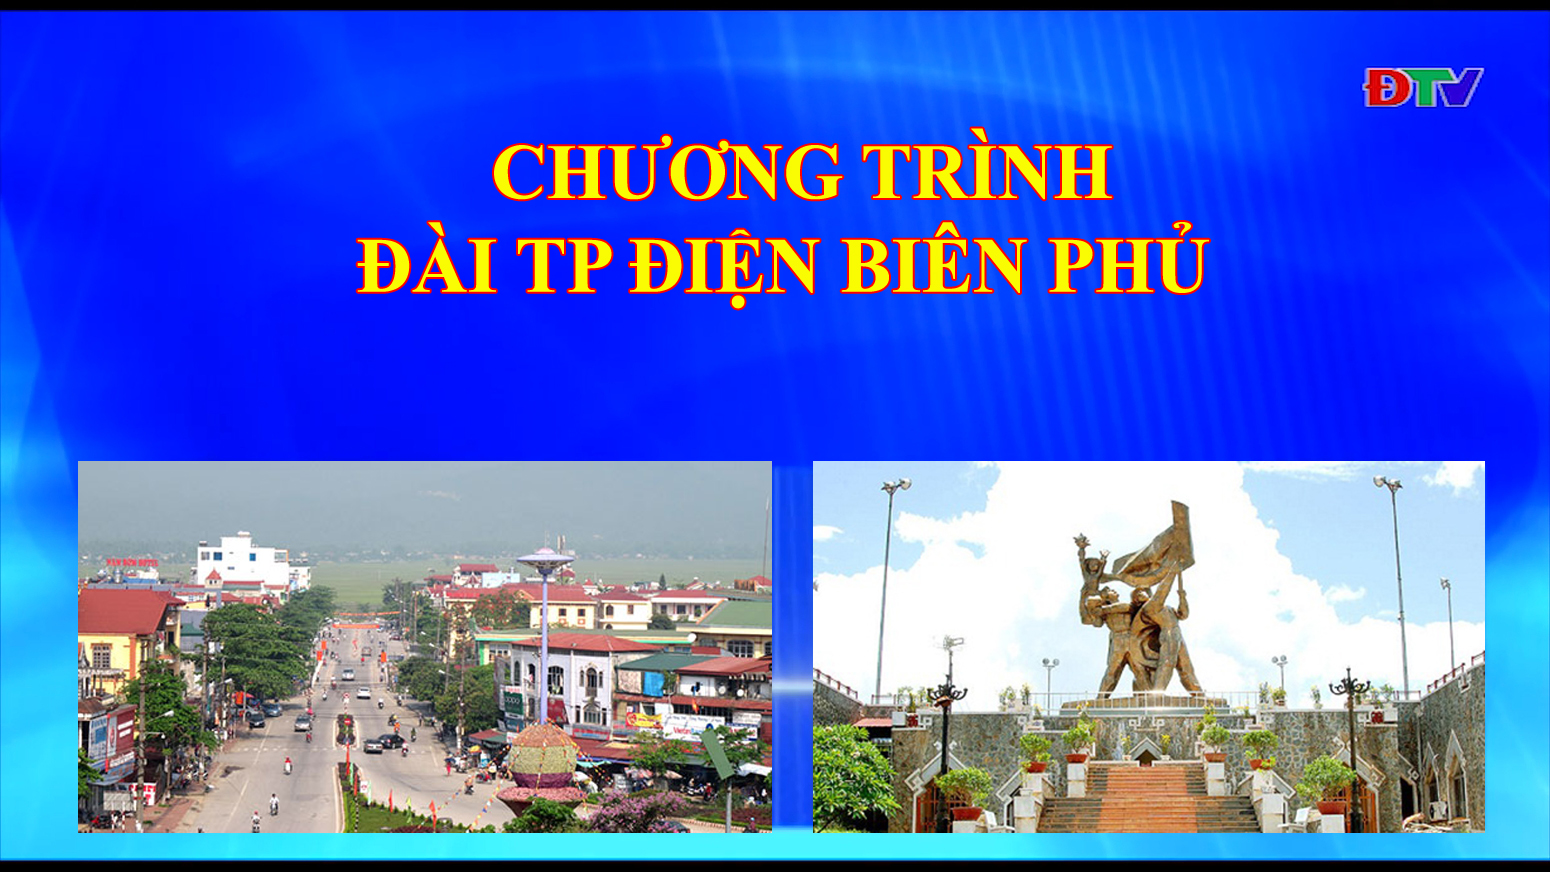 Đài thành phố Điện Biên Phủ (ngày 8-10-2019)